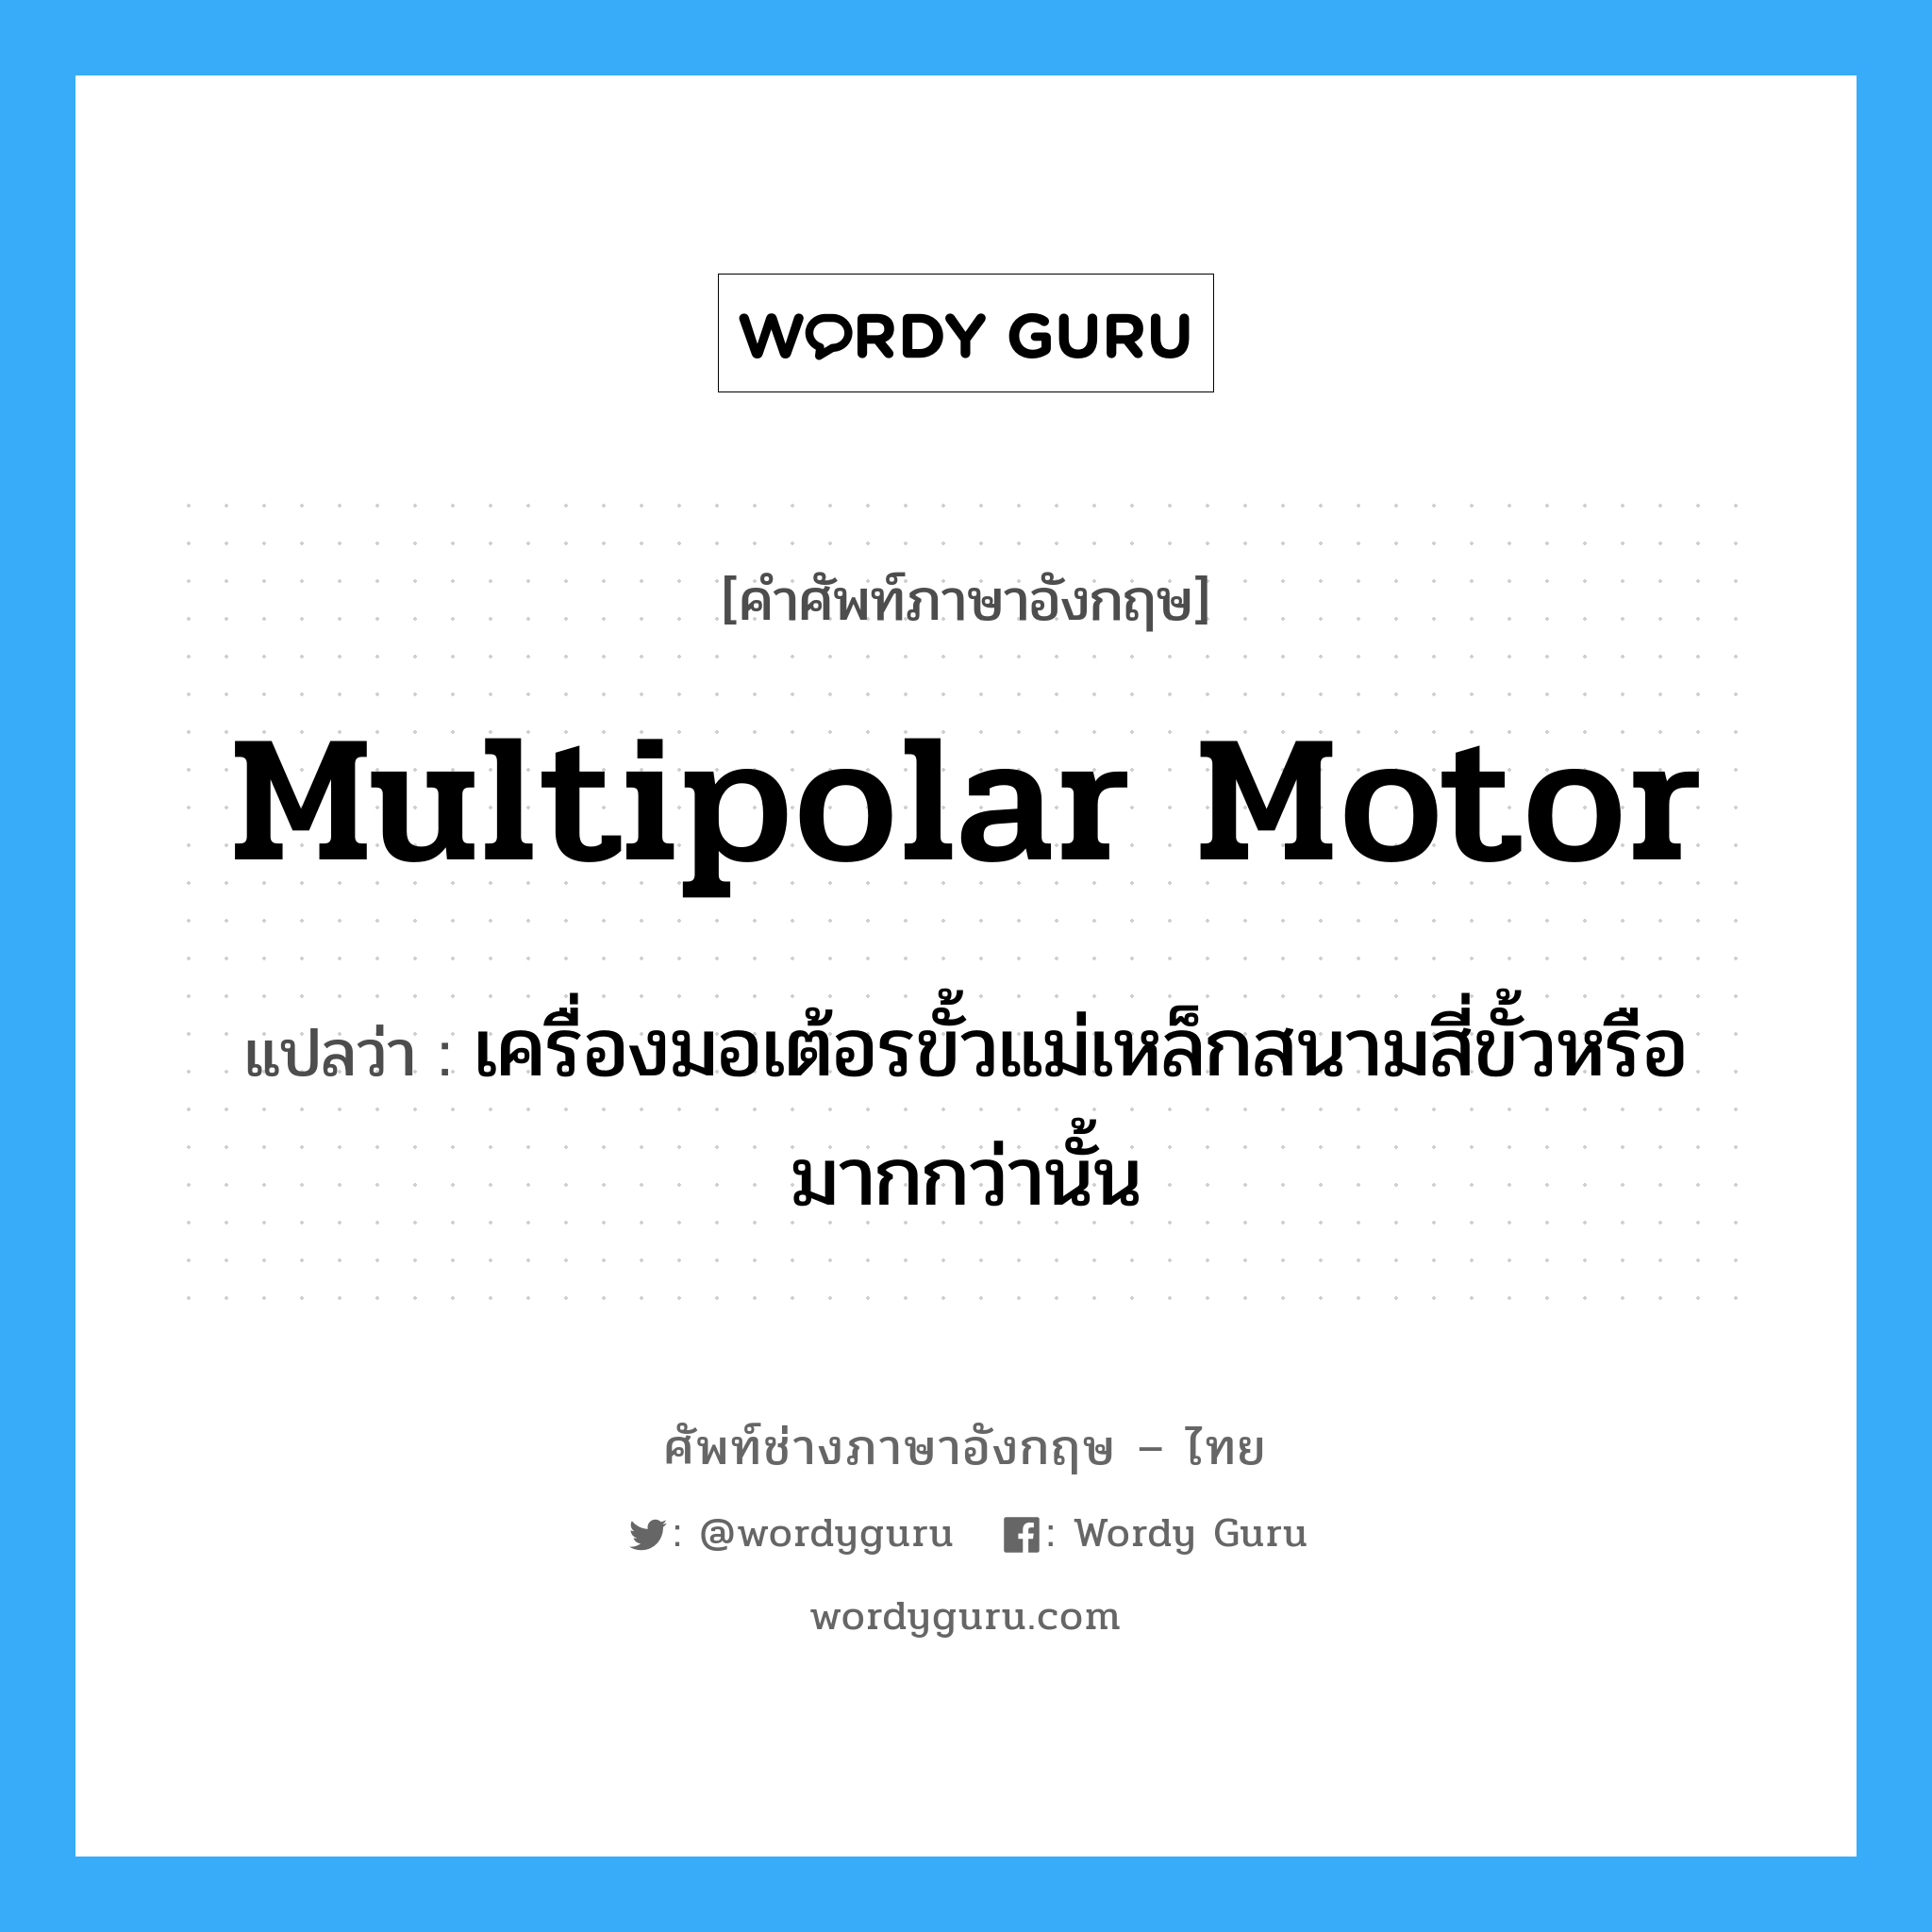 multipolar motor แปลว่า?, คำศัพท์ช่างภาษาอังกฤษ - ไทย multipolar motor คำศัพท์ภาษาอังกฤษ multipolar motor แปลว่า เครื่องมอเต้อรขั้วแม่เหล็กสนามสี่ขั้วหรือมากกว่านั้น